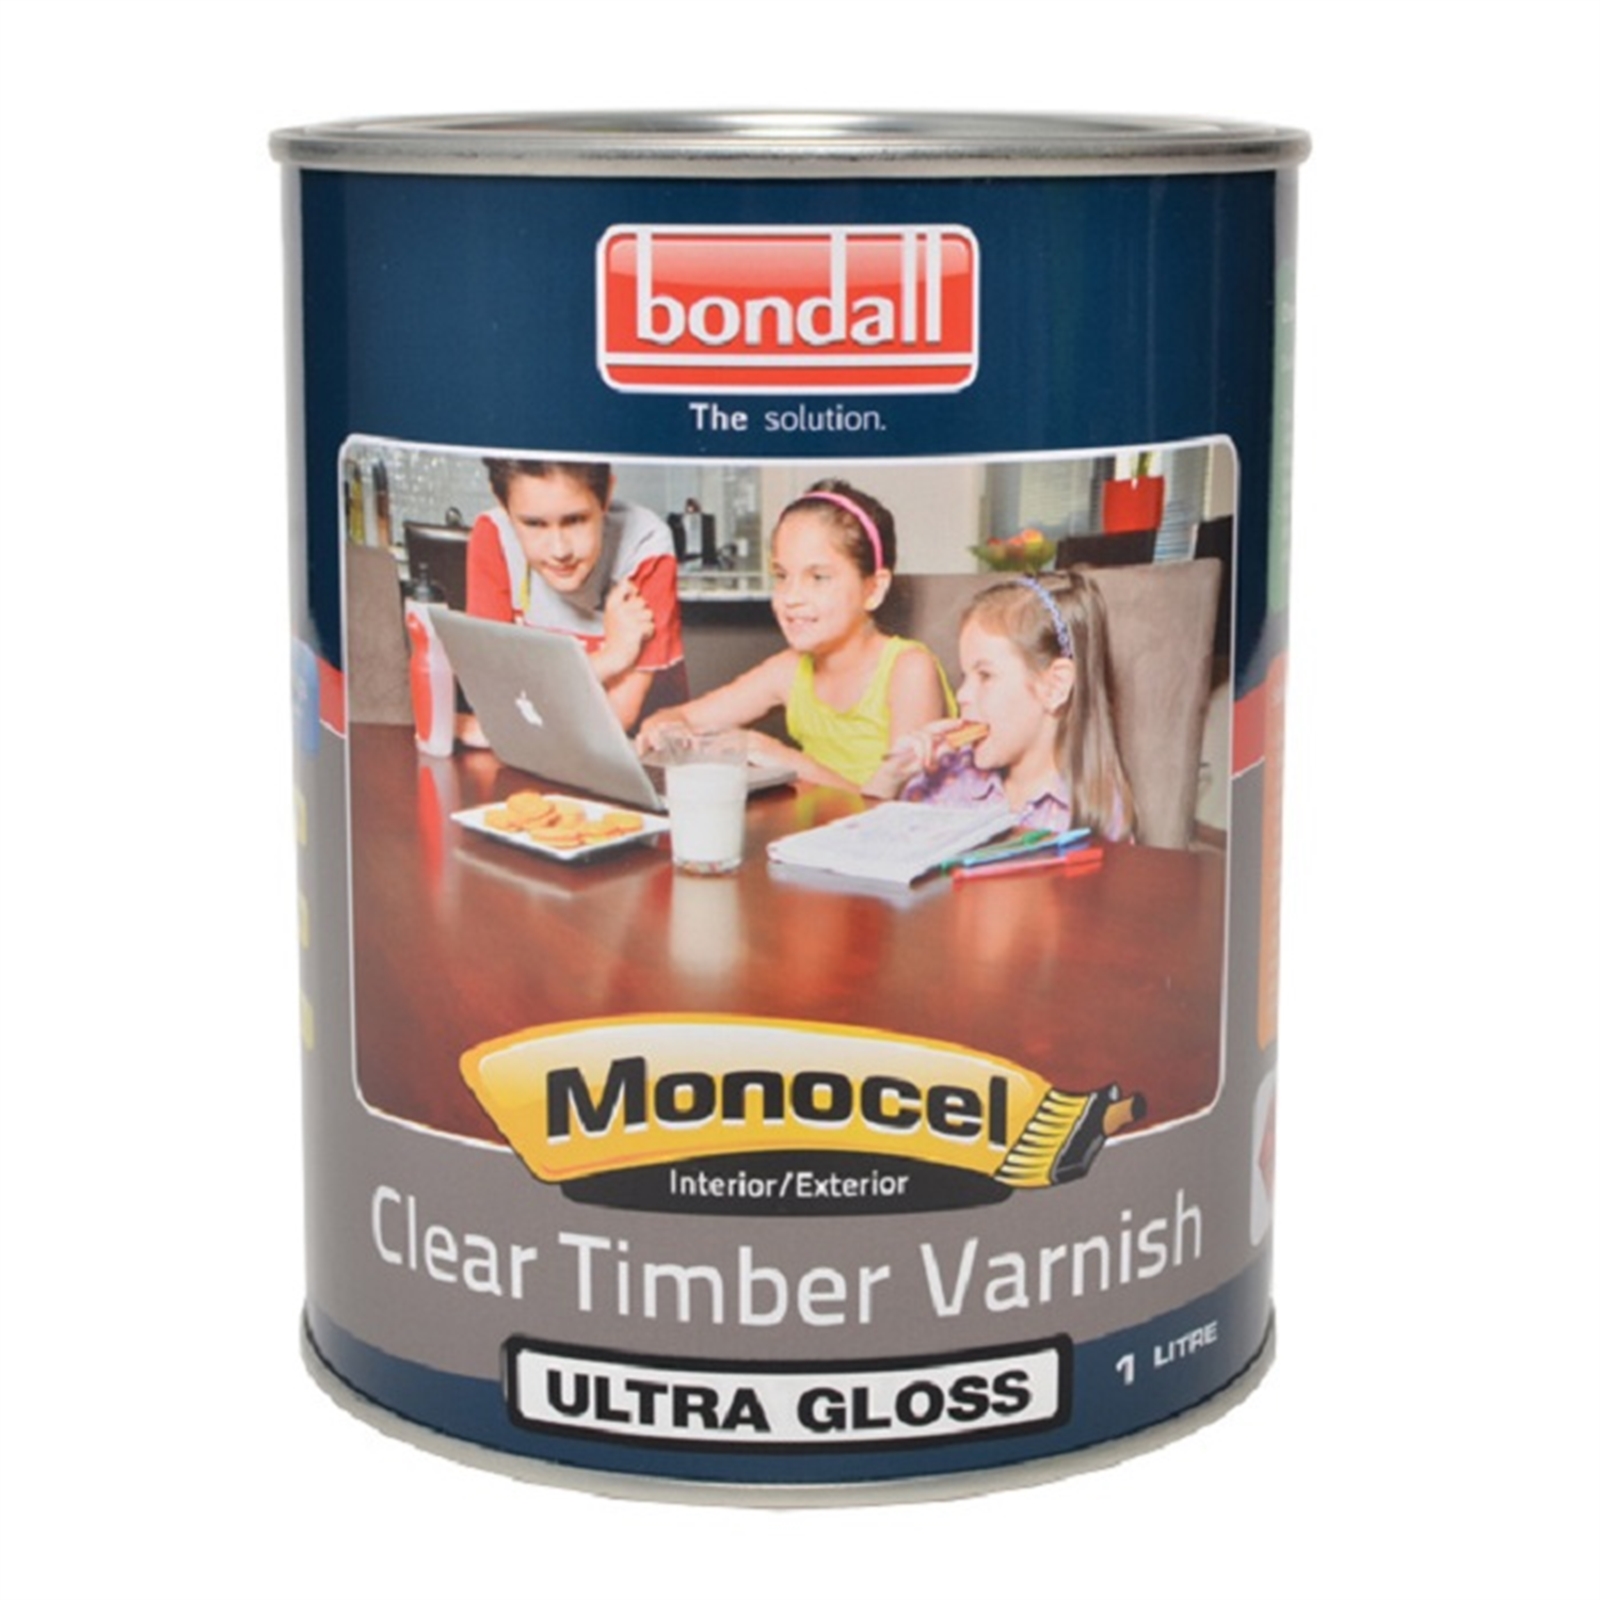 Bondall 1L Ultra Gloss Monocel Clear Timber Varnish